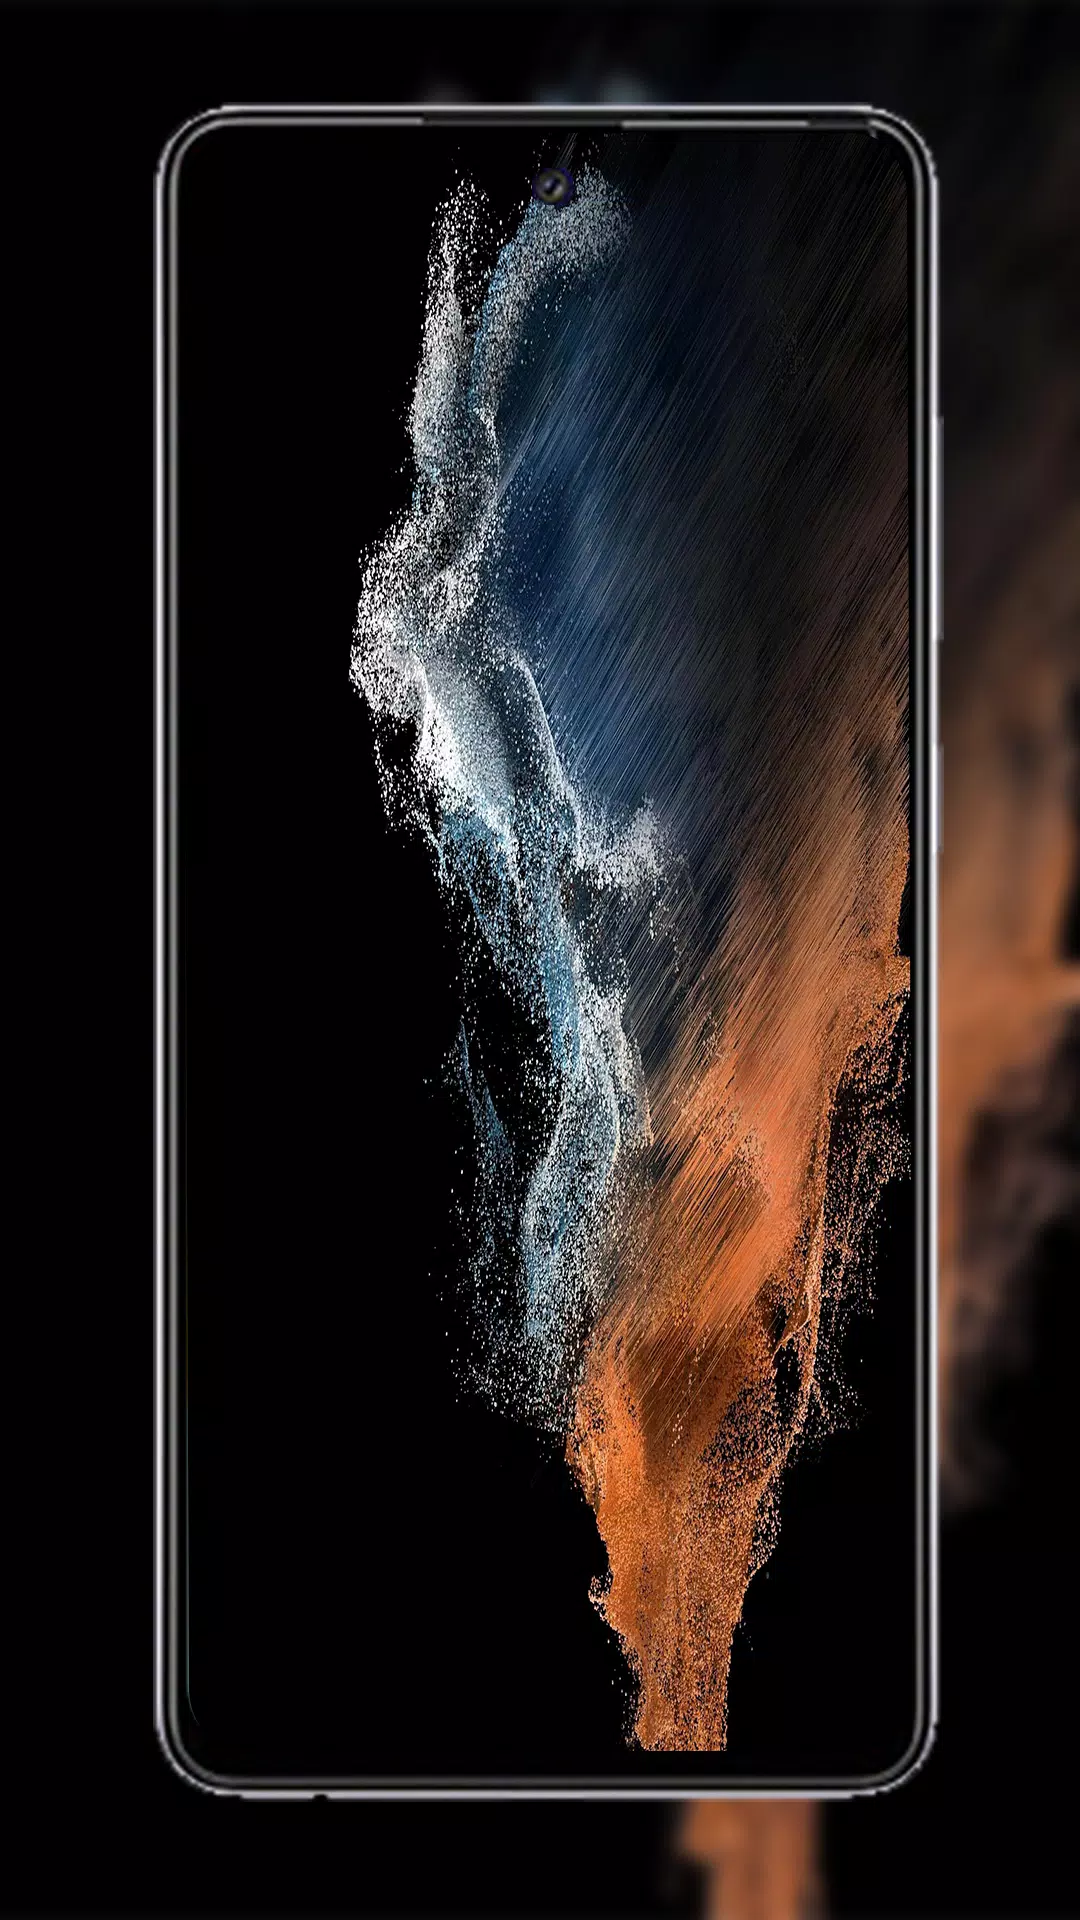 Chỉ với một cú click chuột đơn giản, bạn đã có ngay những hình nền tuyệt đẹp, độc đáo tầm cỡ cho chiếc điện thoại Samsung Galaxy S22 Ultra của mình. Hãy tìm hiểu ngay cách để tải những tuyệt phẩm này thông qua hình ảnh tại đây.